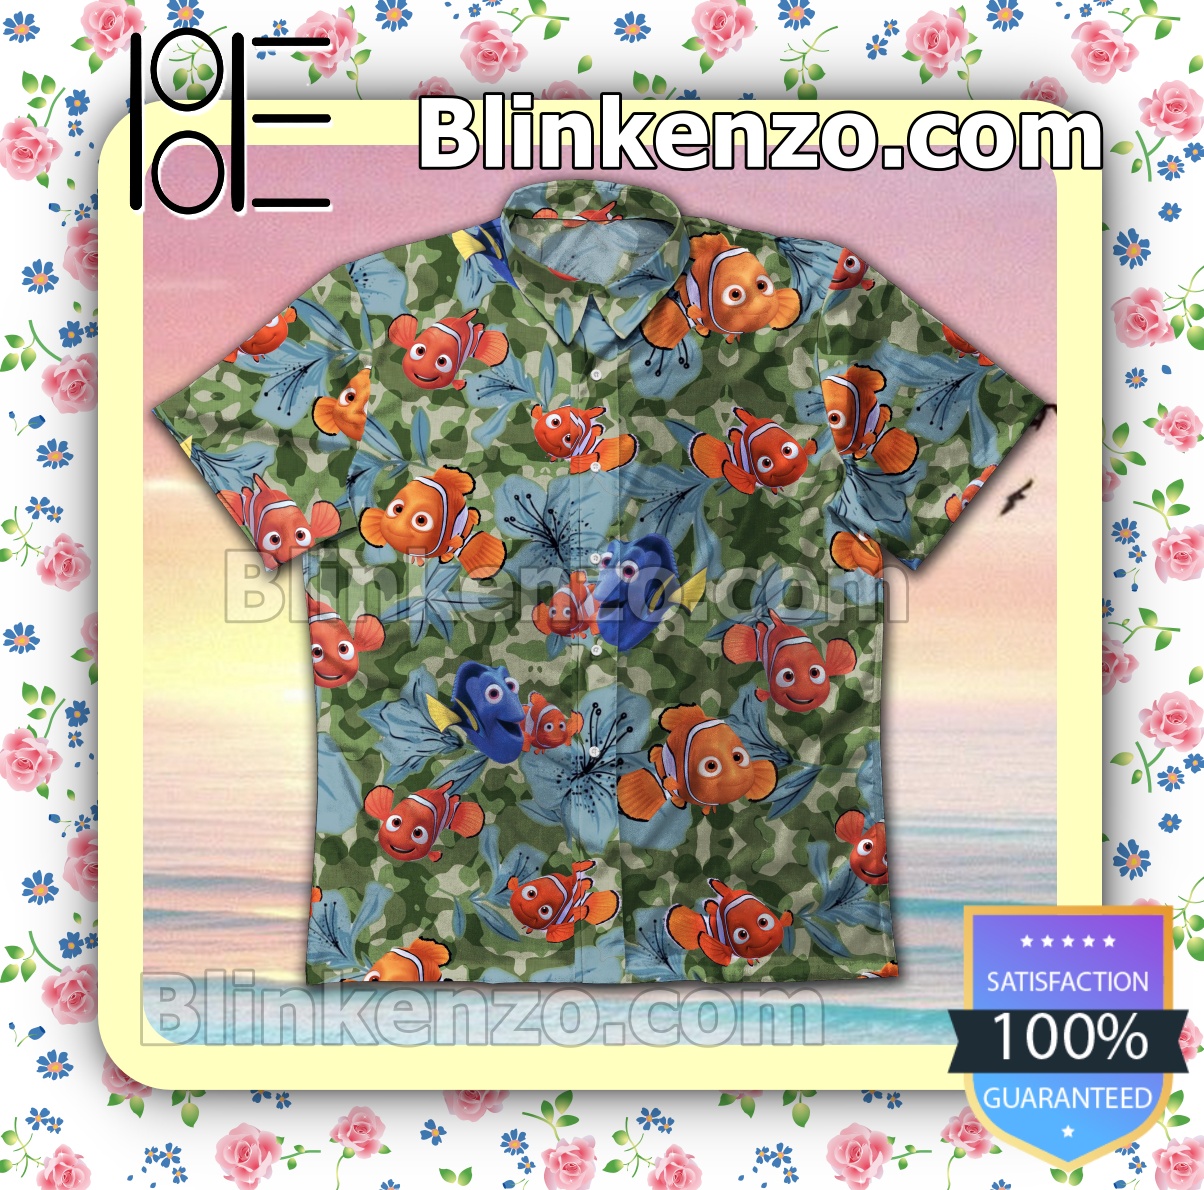 Great artwork! Finding Nemo Blue Flower Green Camo Summer Shirts